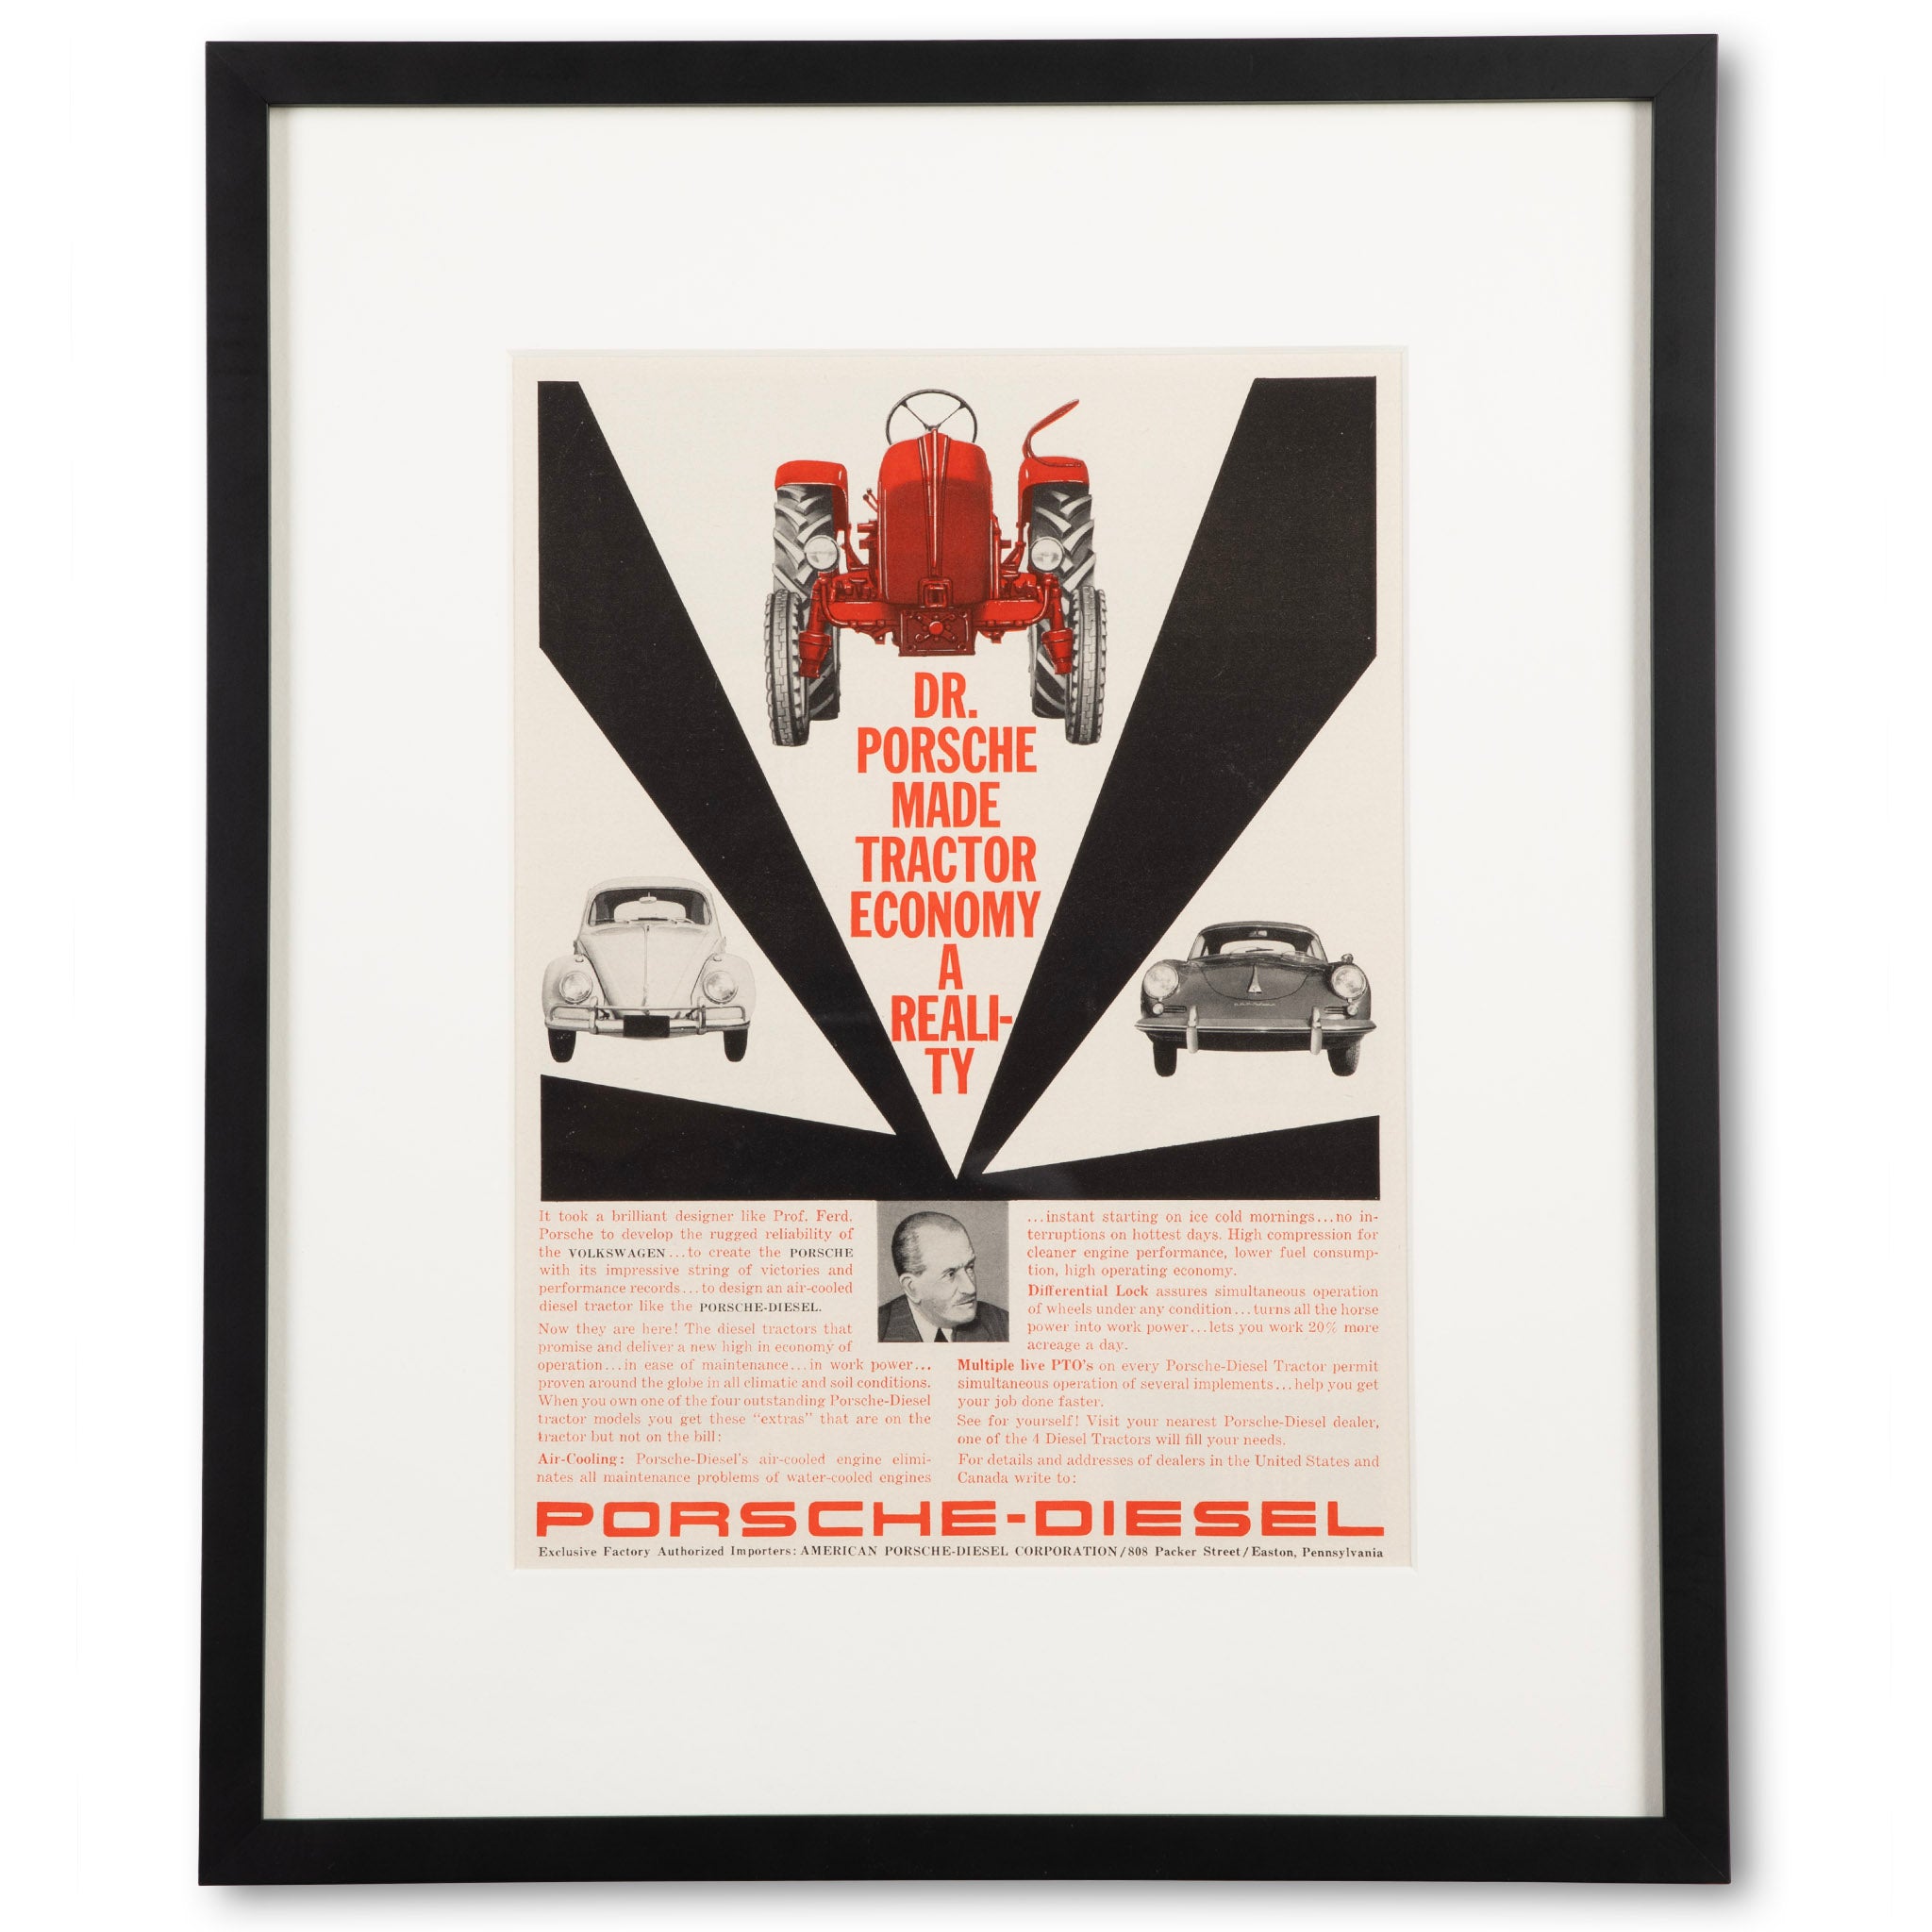 Framed 1960s Porsche-Diesel Tractor Advertisement